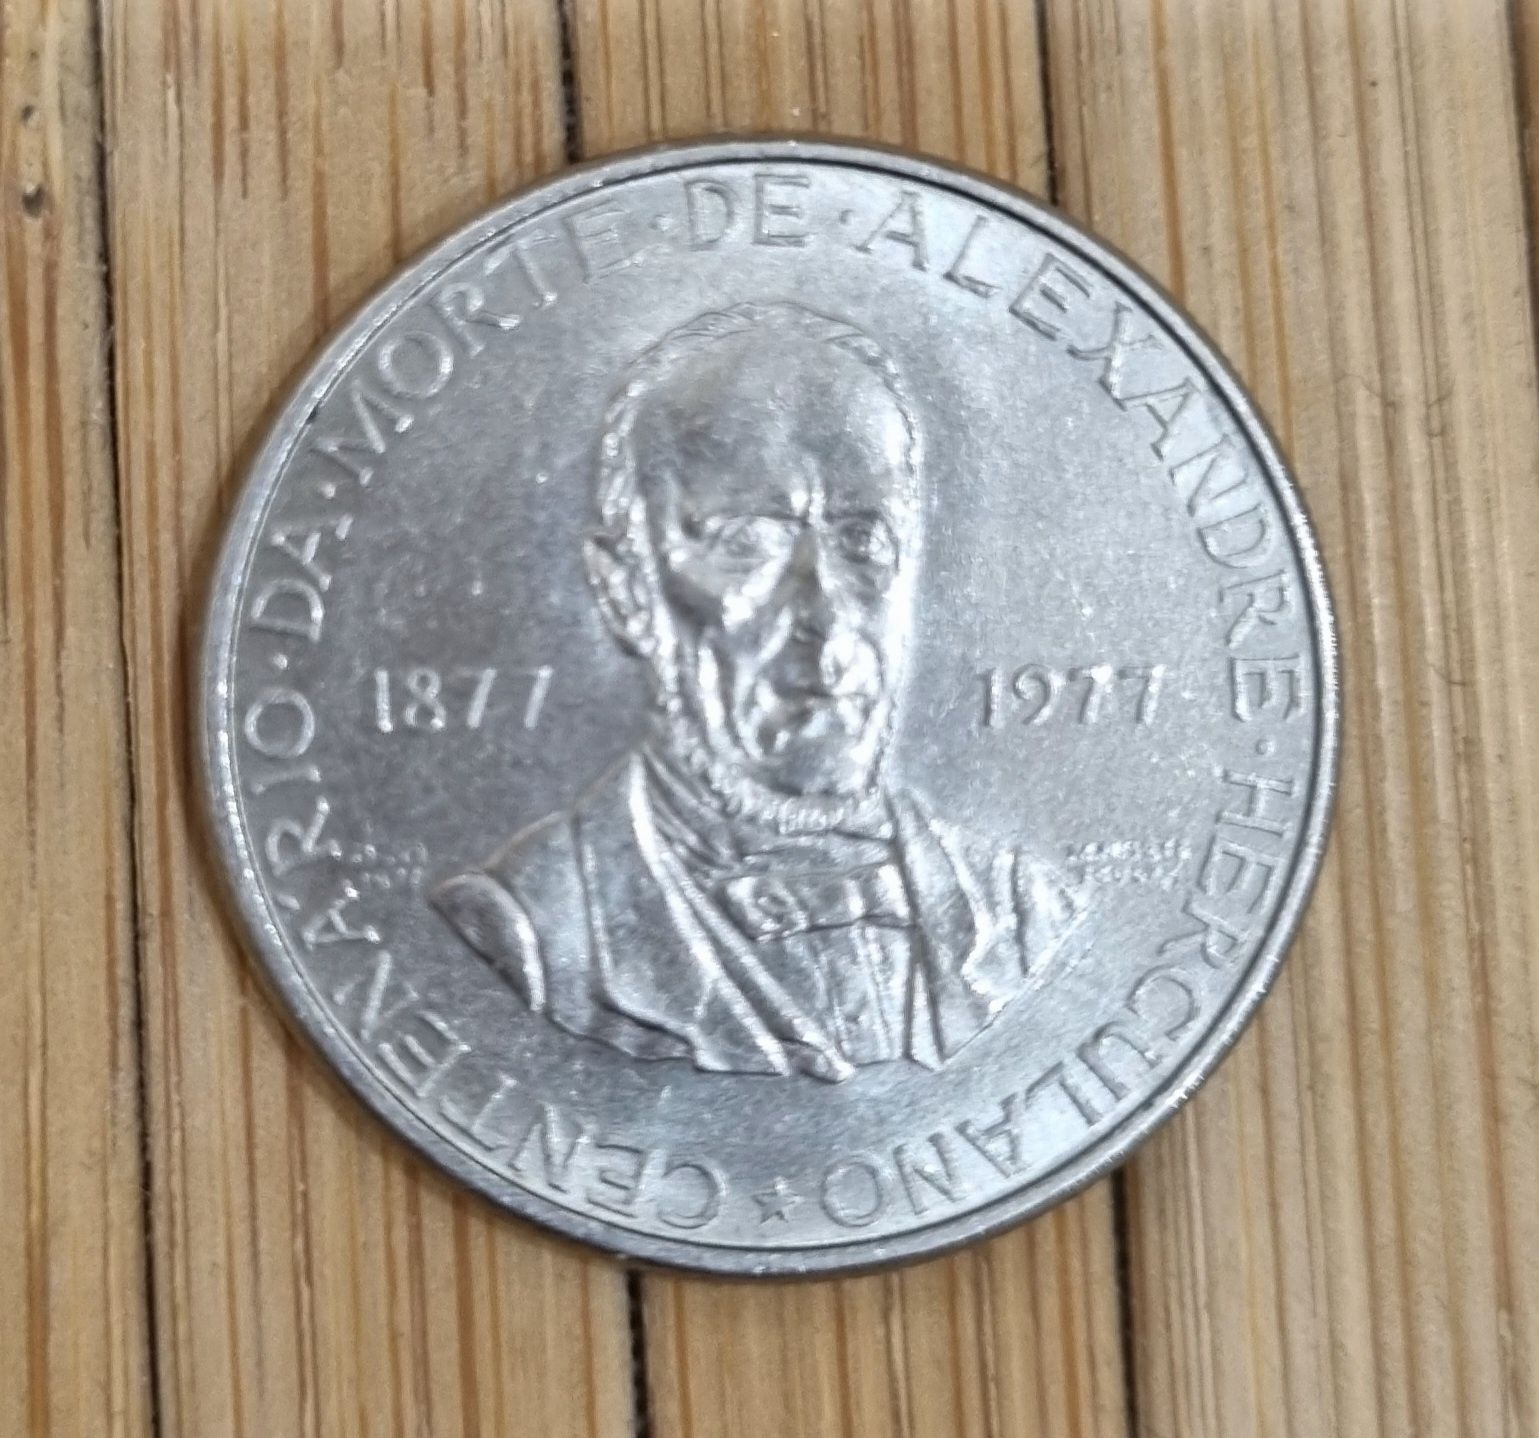 7 moedas de 1977 de 5,00 escudos centenário da morte de Alexandre Herc